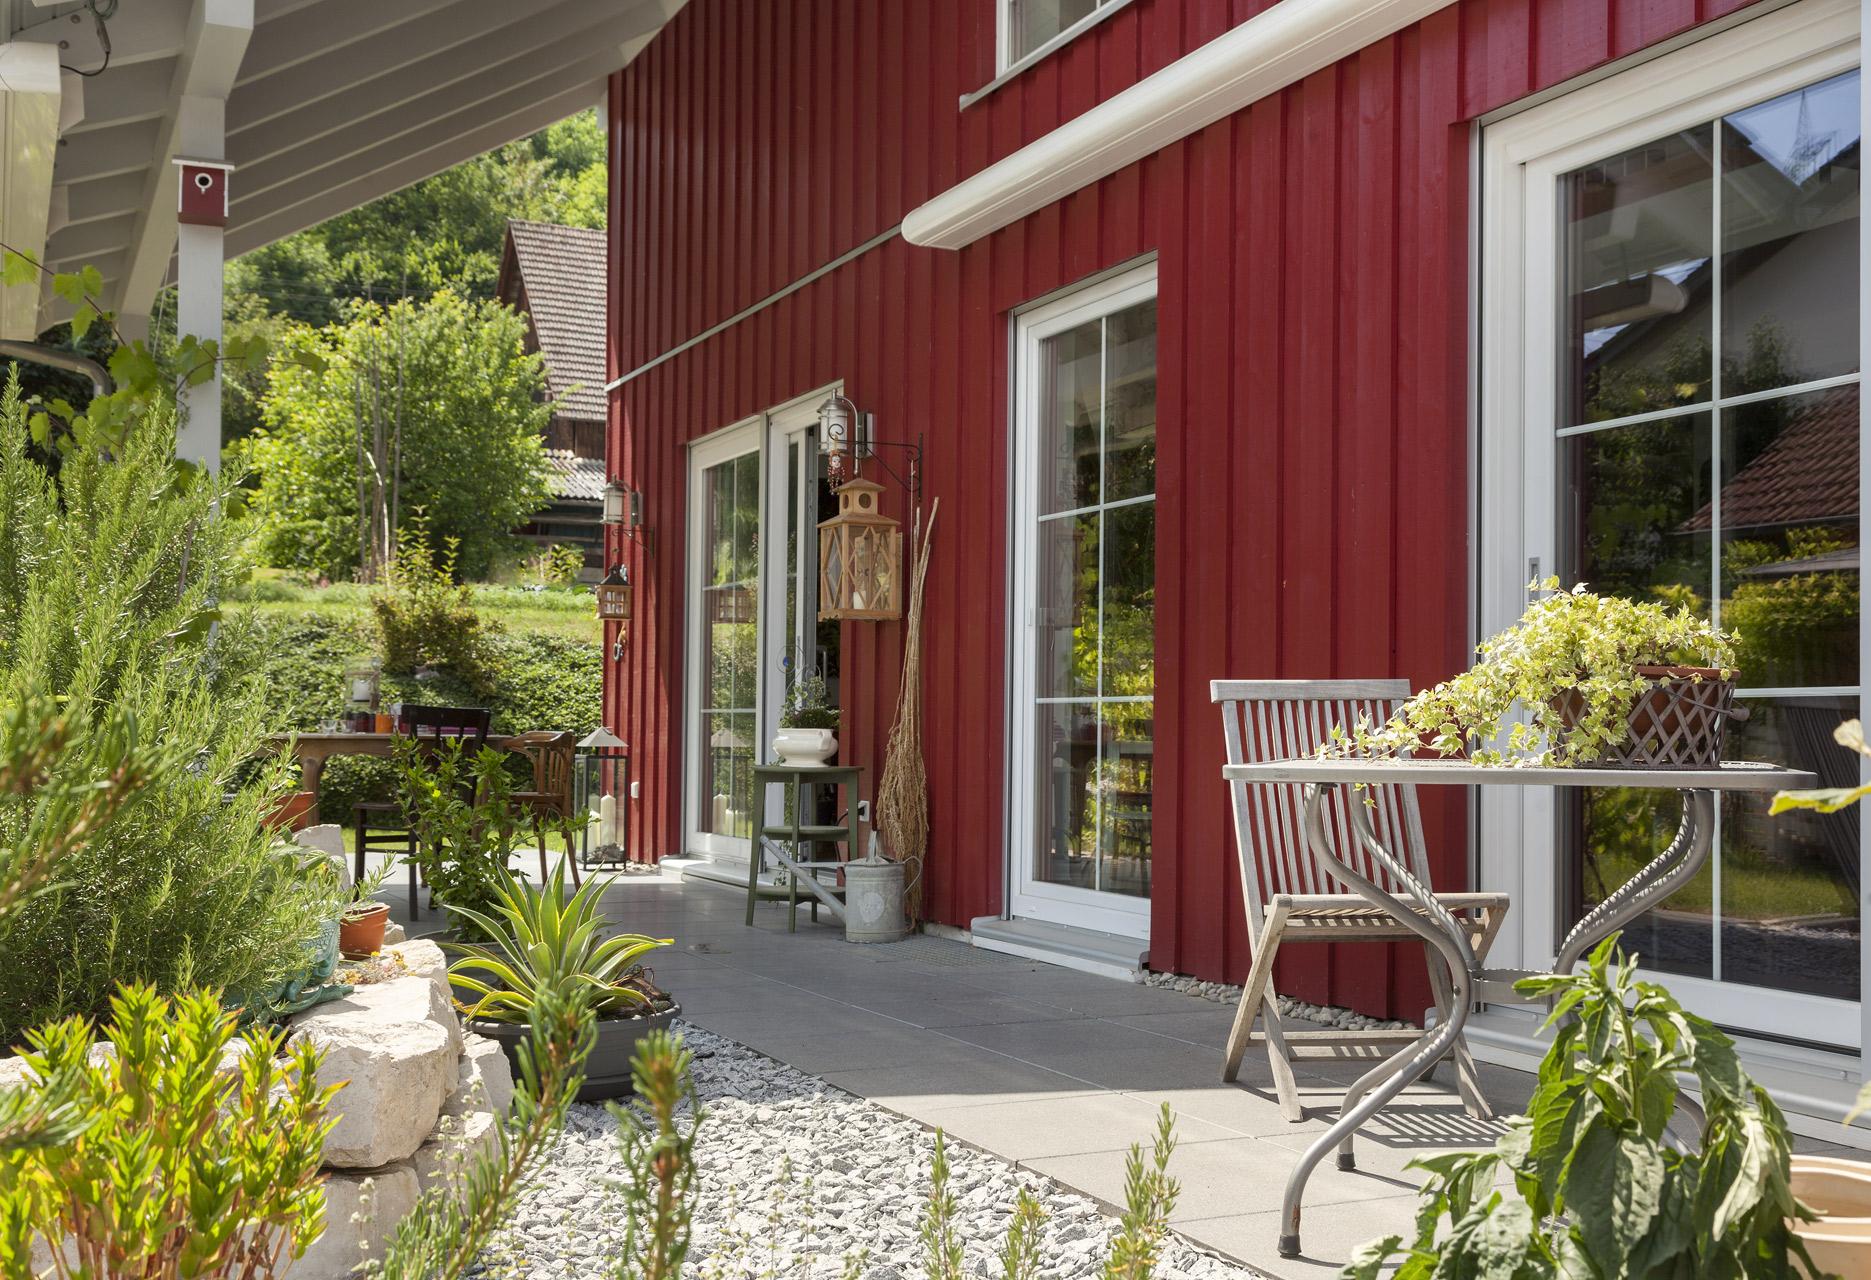 Maison préfabriquée avec revêtement en bois rouge et belle terrasse